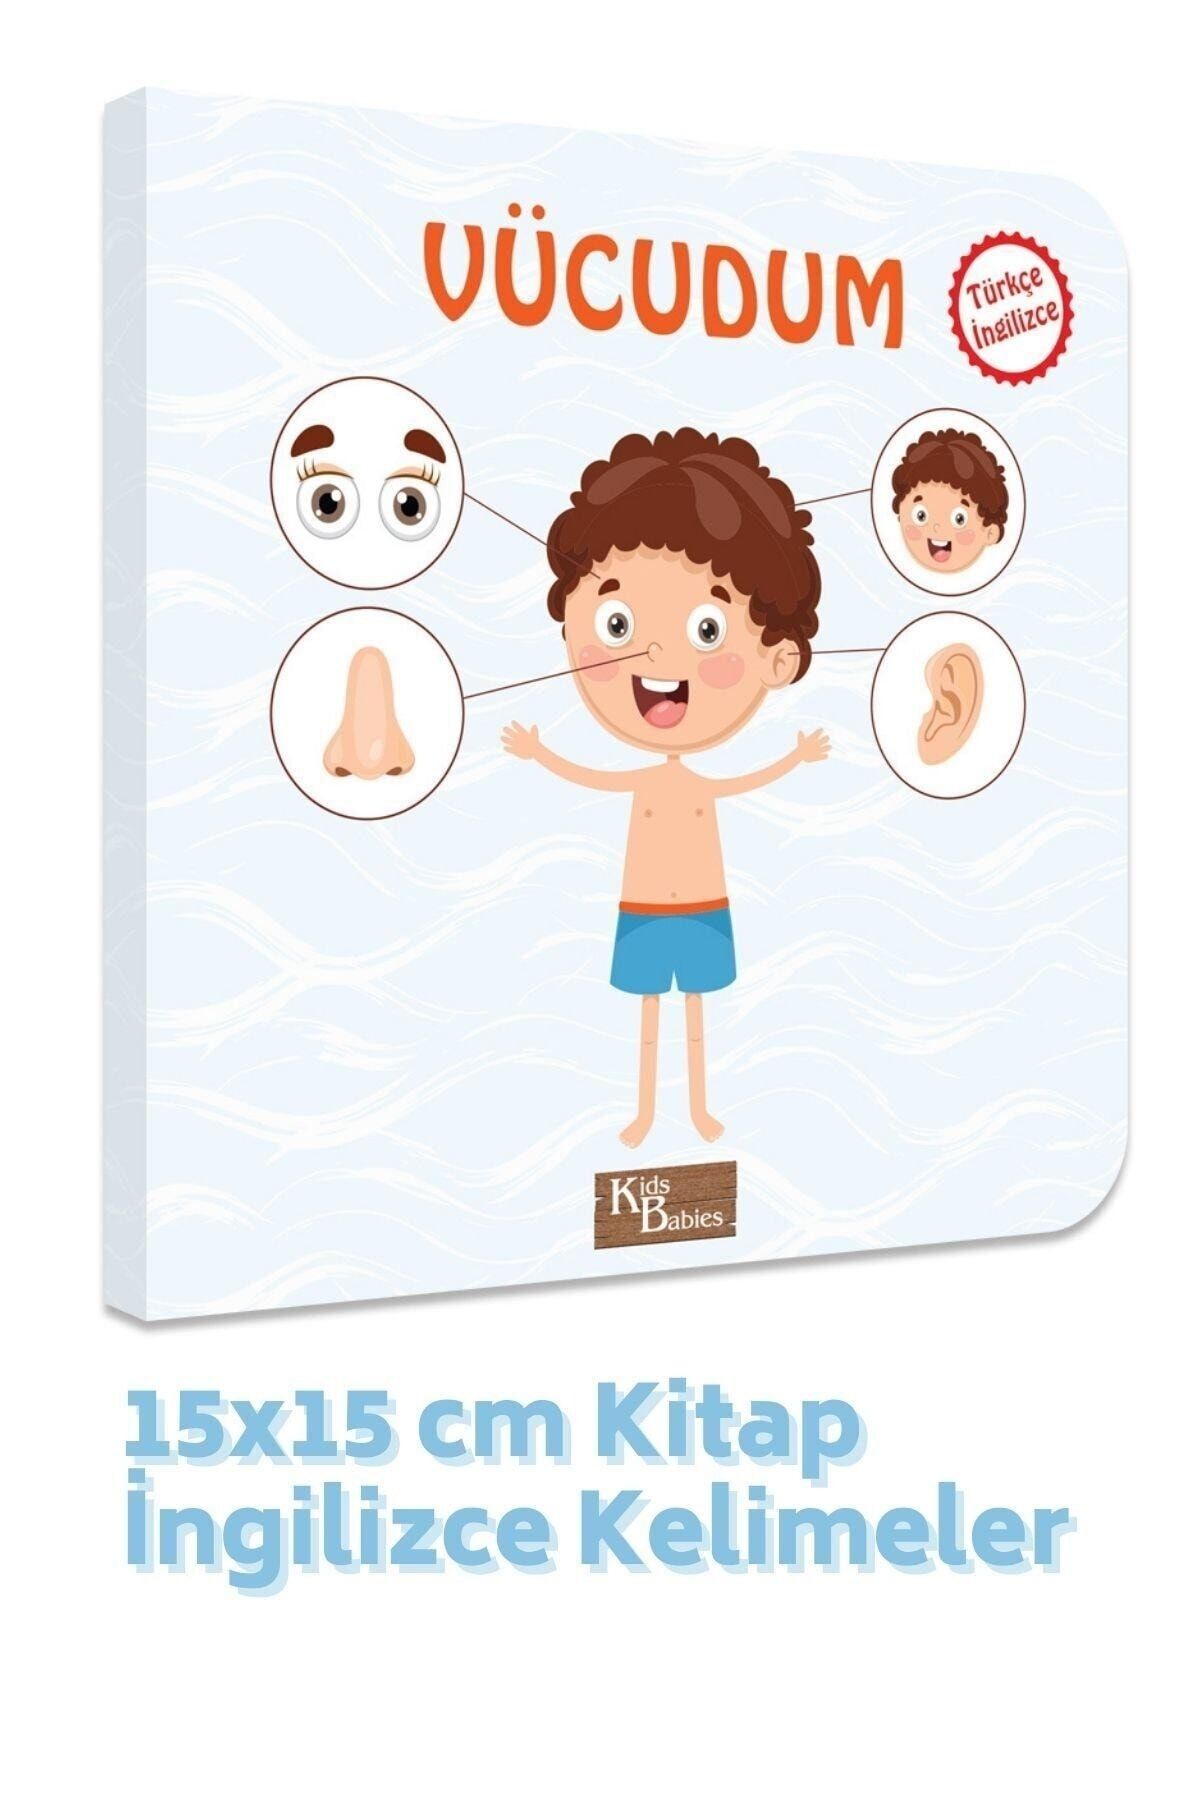 Kids Babies Vücudum Türkçe-ingilizce Kelimeler 15x15 Cm Kitap